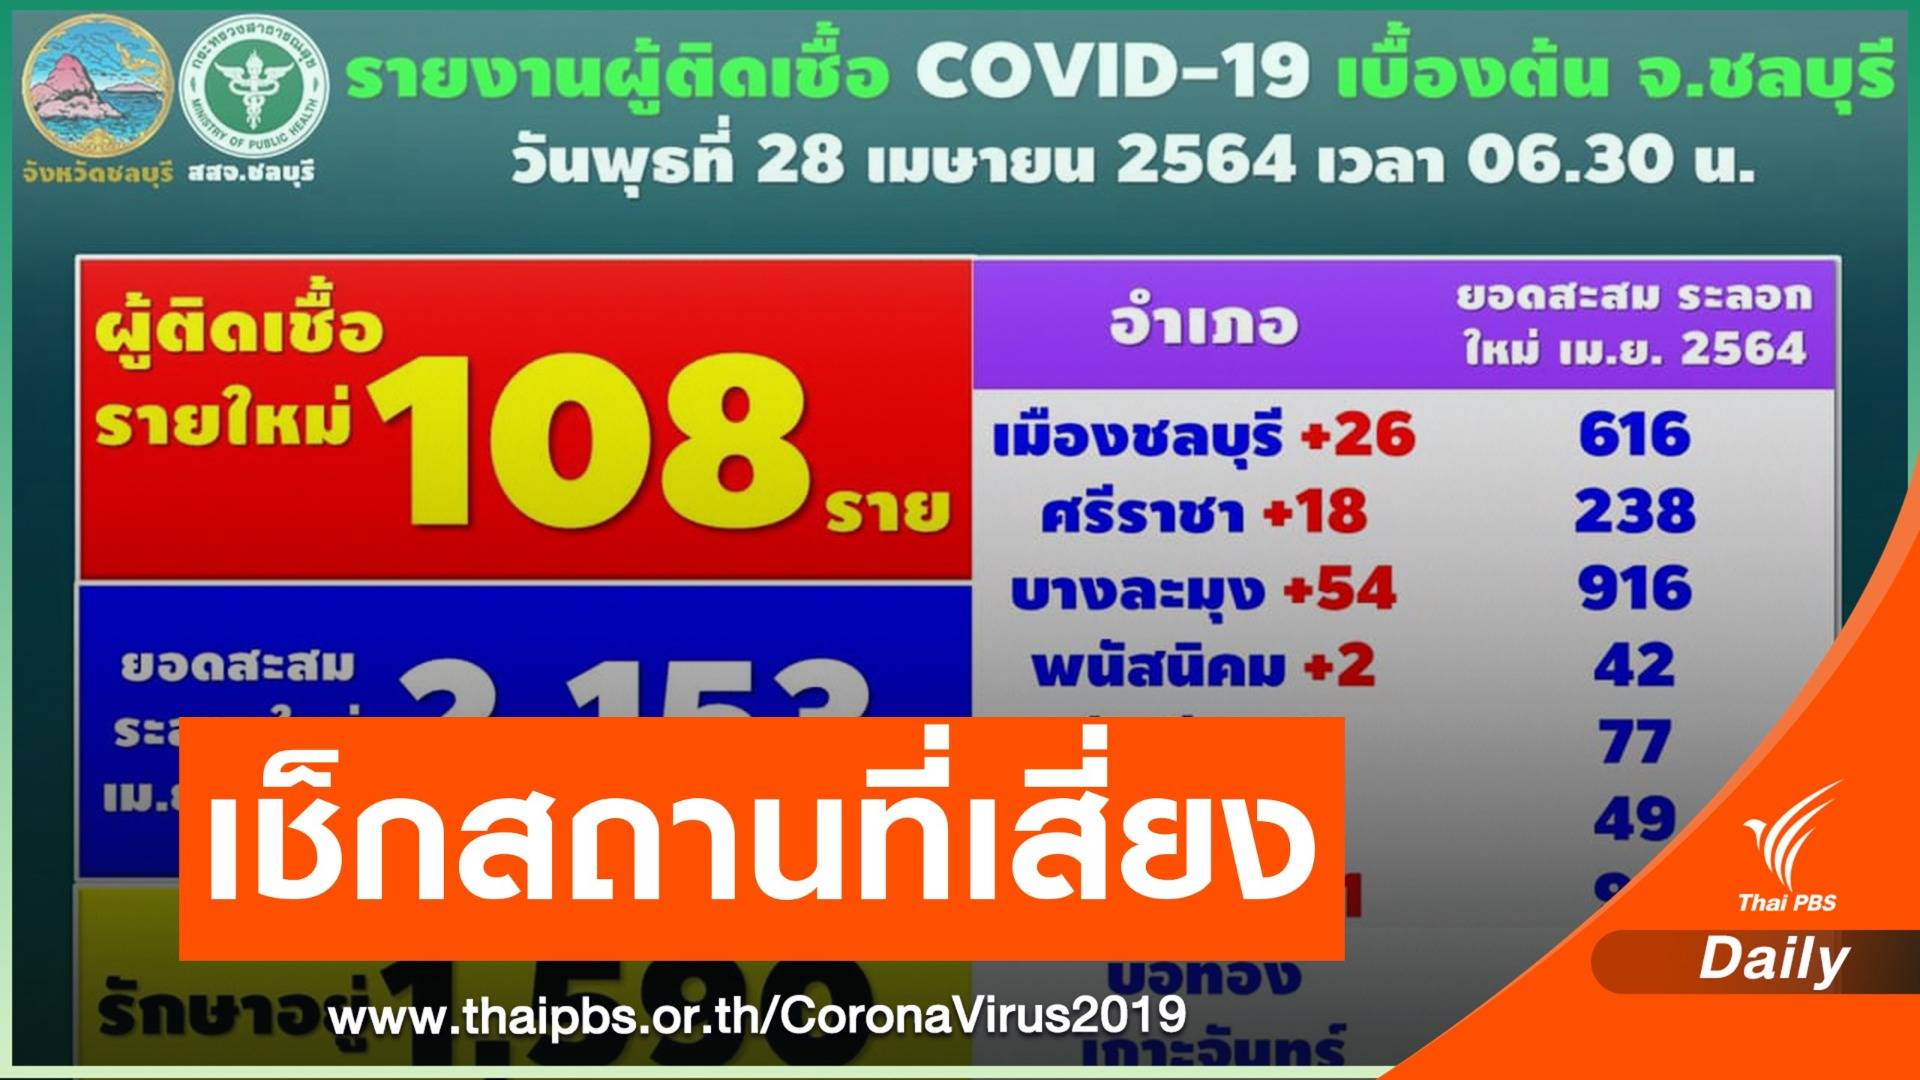 ชลบุรี ติด COVID-19 เพิ่ม 108 คน เปิด 14 สถานที่เสี่ยง